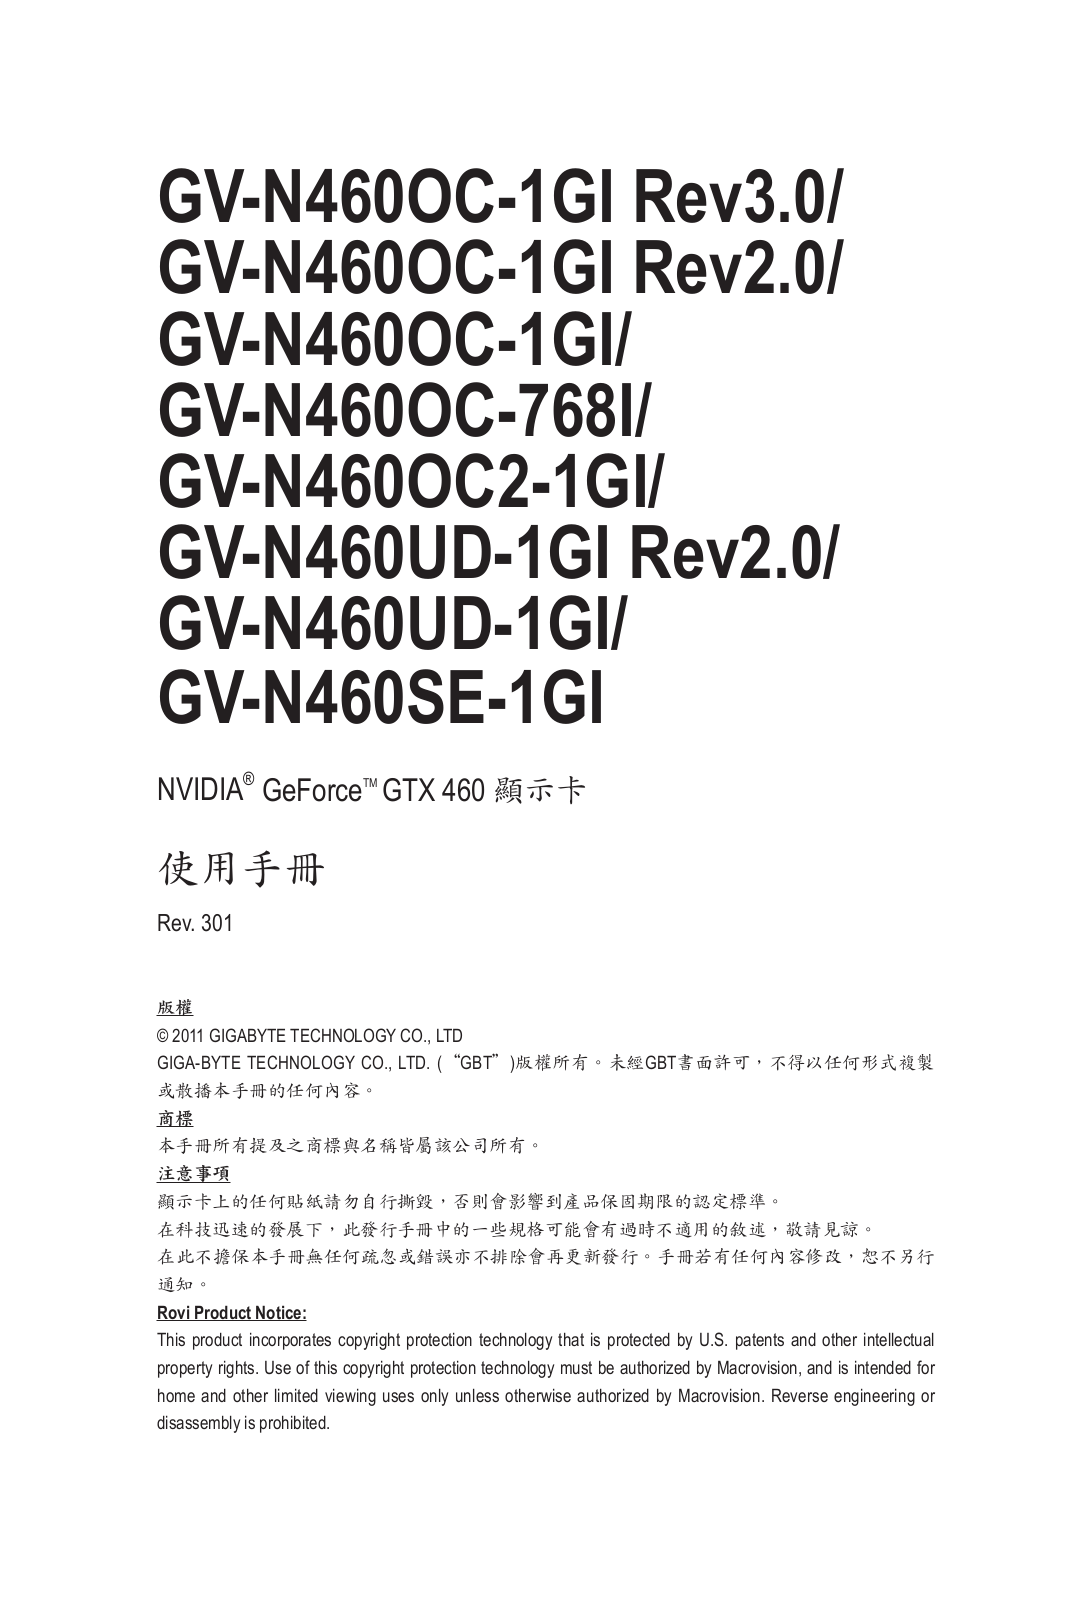 GIGABYTE GV-N460OC-1GI, GV-N460OC-768I, GV-N460OC2-1GI, GV-N460UD-1GI, GV-N460SE-1GI User Guide